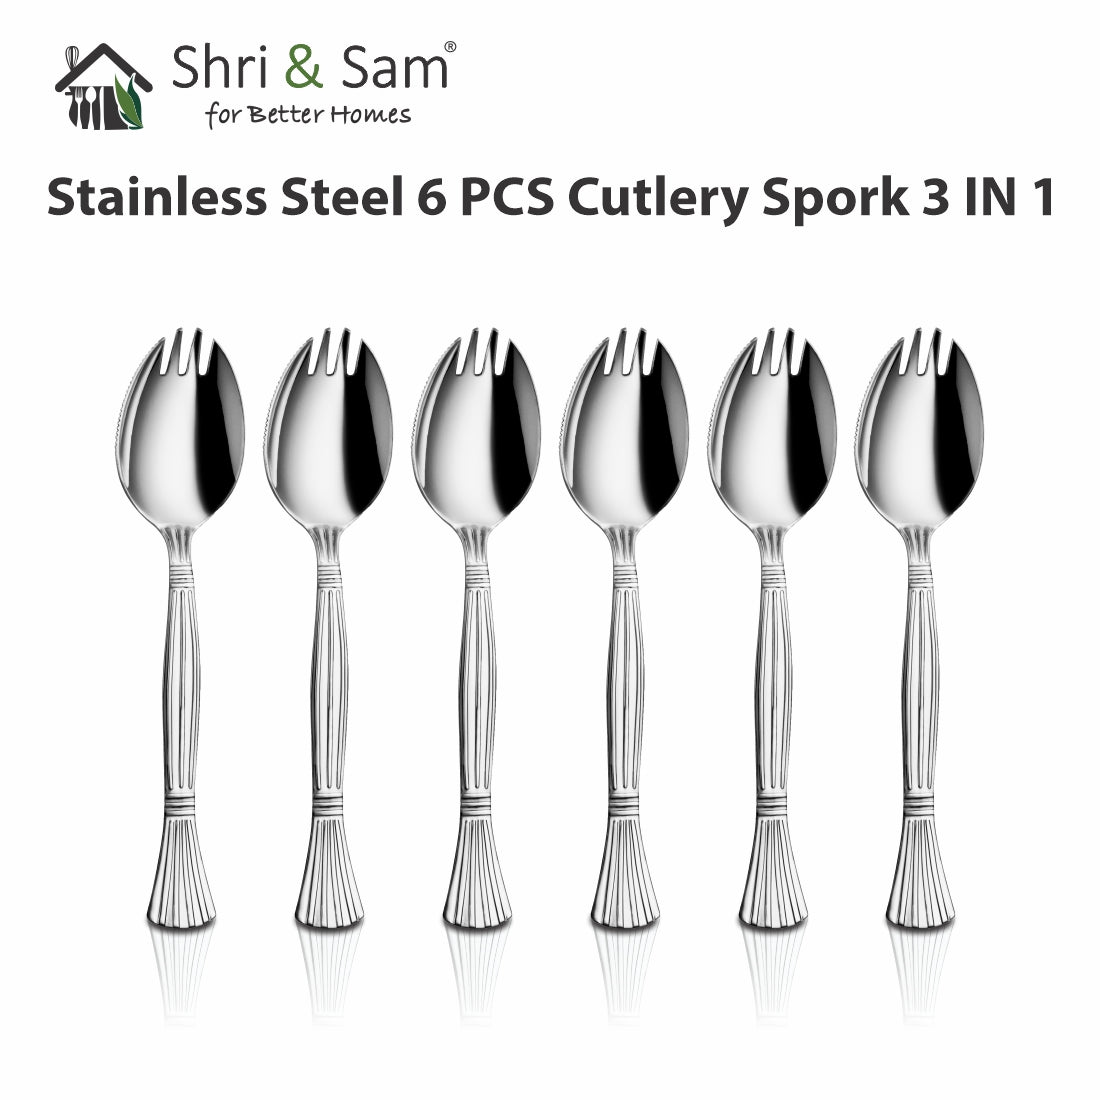 Stainless Steel 6 PCS Cutlery Spork 3 IN 1